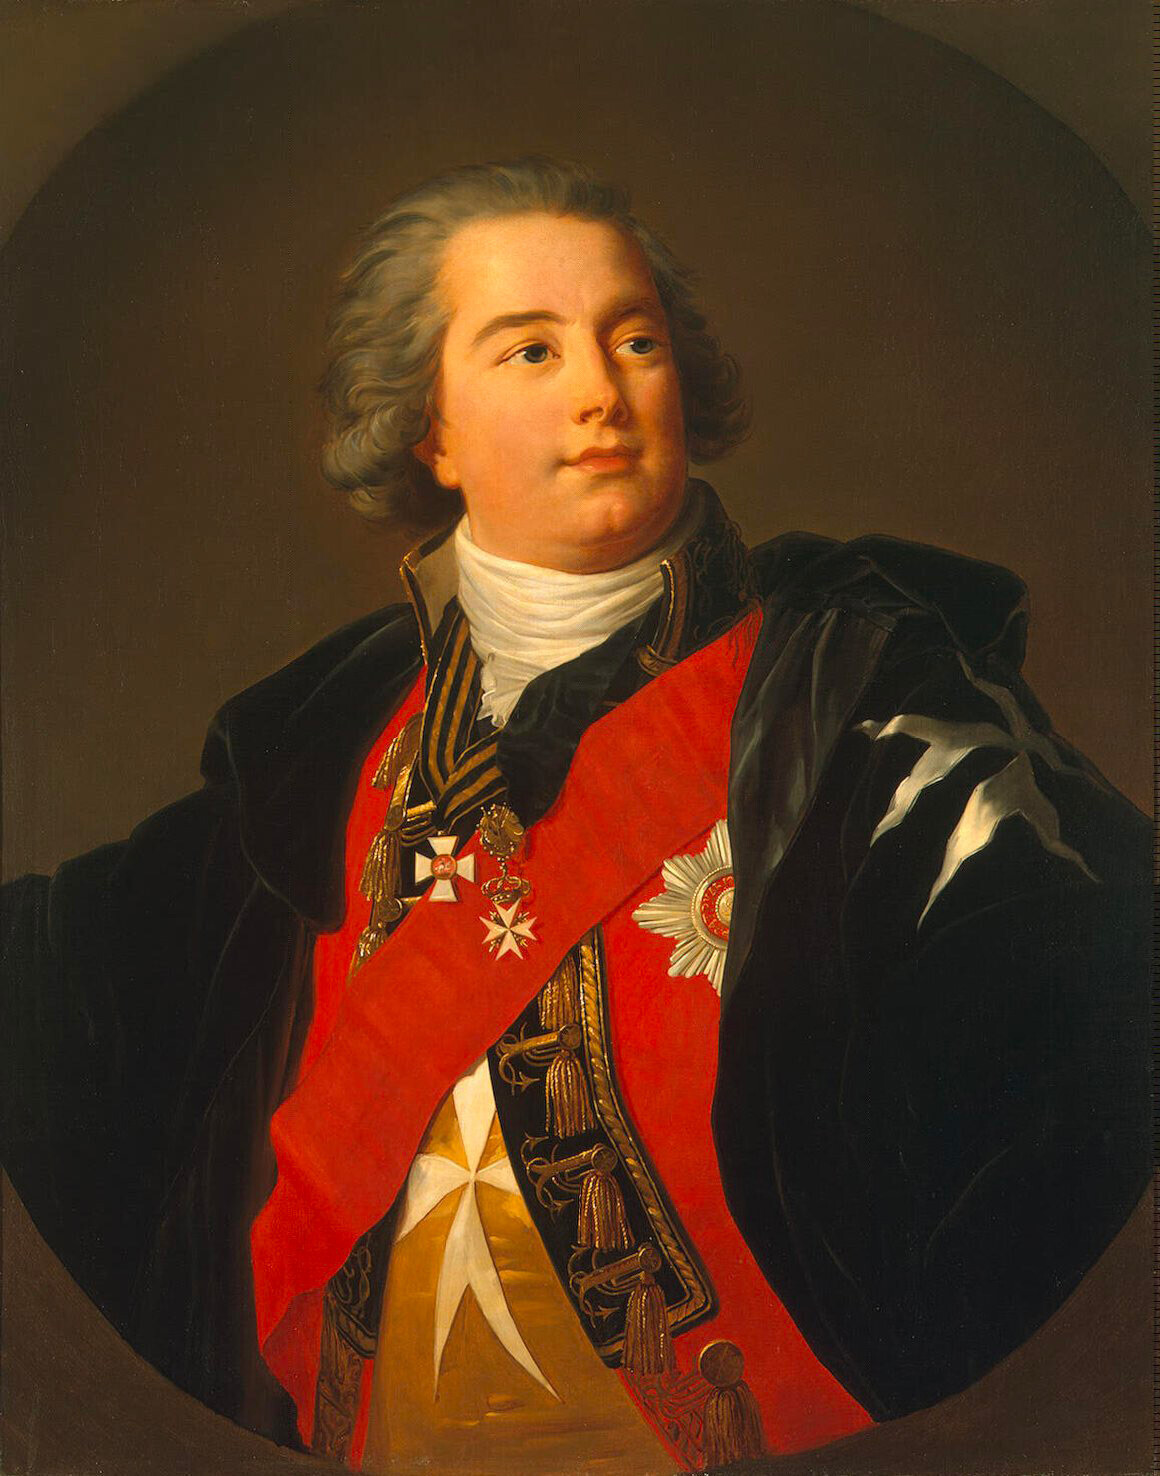 Retrato do conde Giulio Litta (1763-1839).
